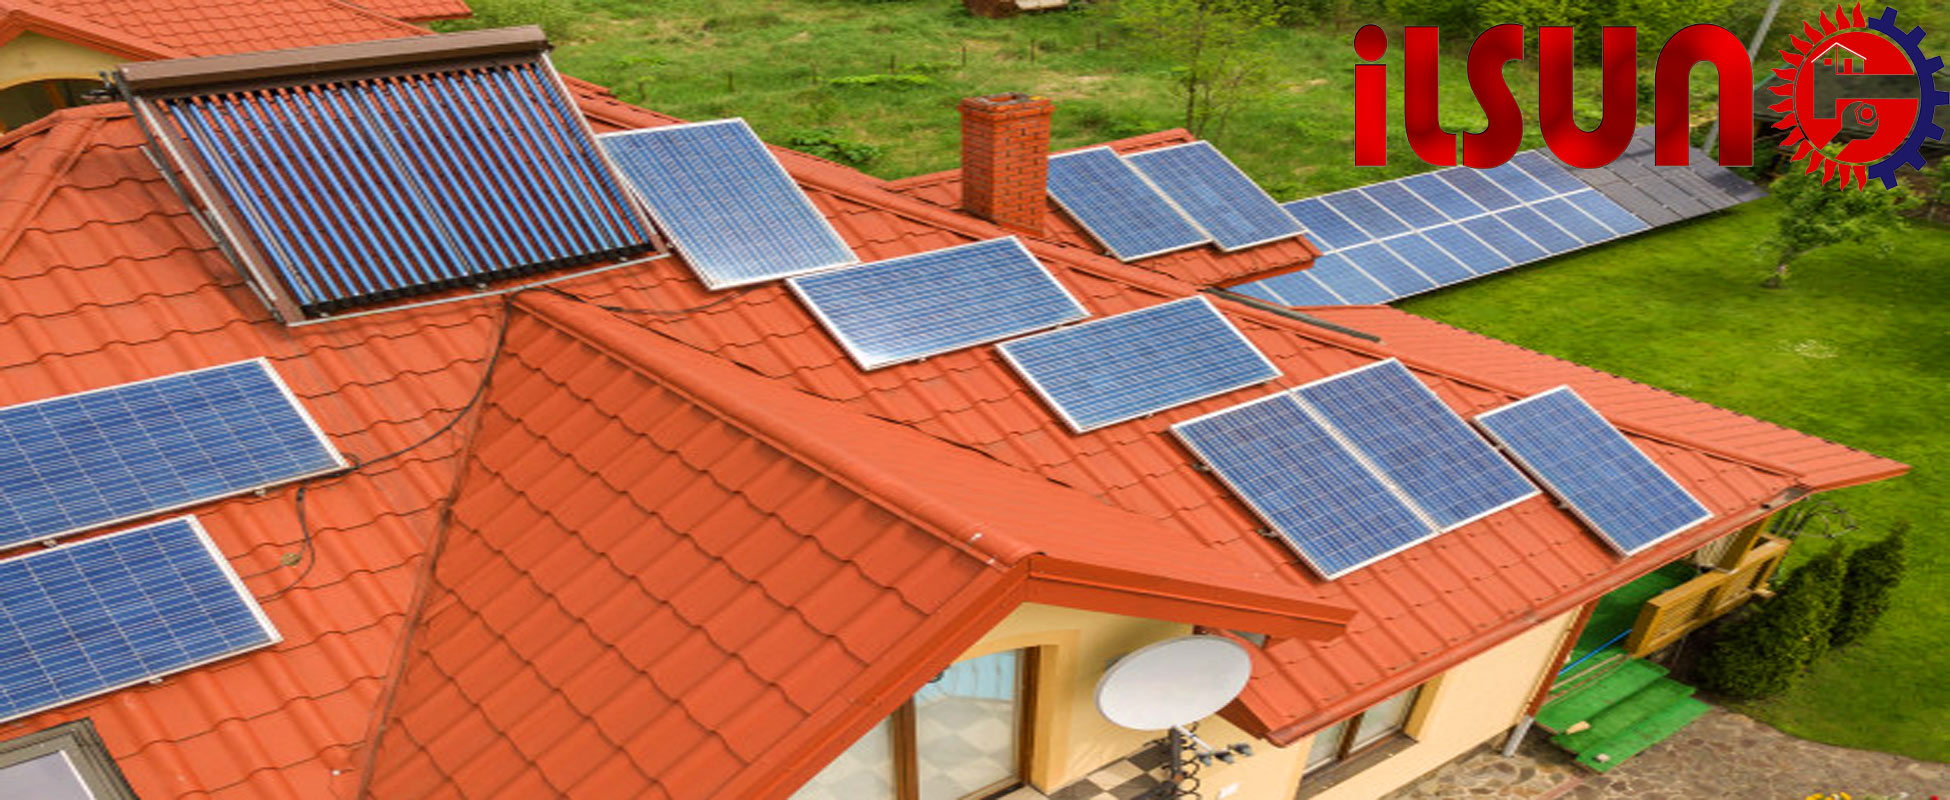 آبگرمکن خورشیدی خانگی چگونه کار می کند؟